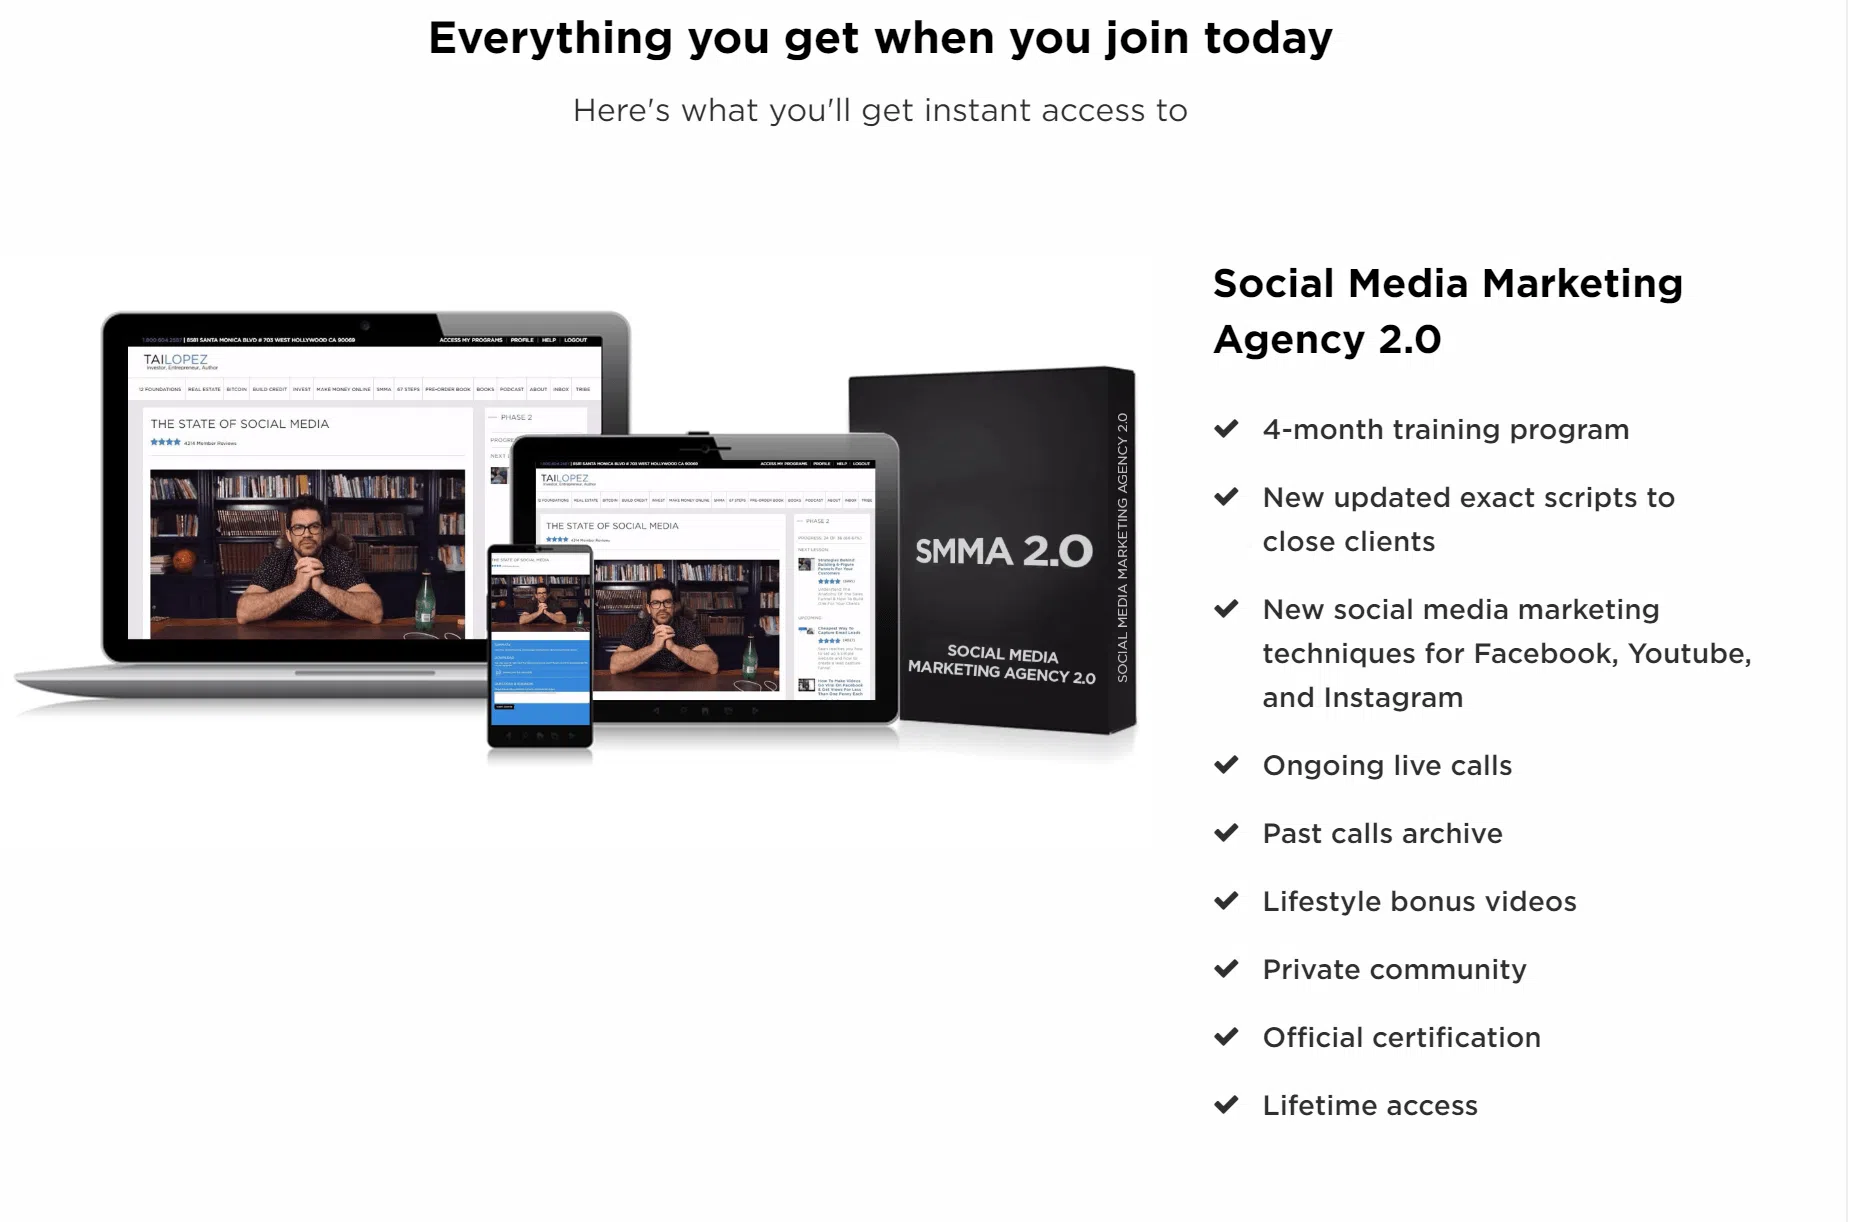 social media marketing agency 2.0